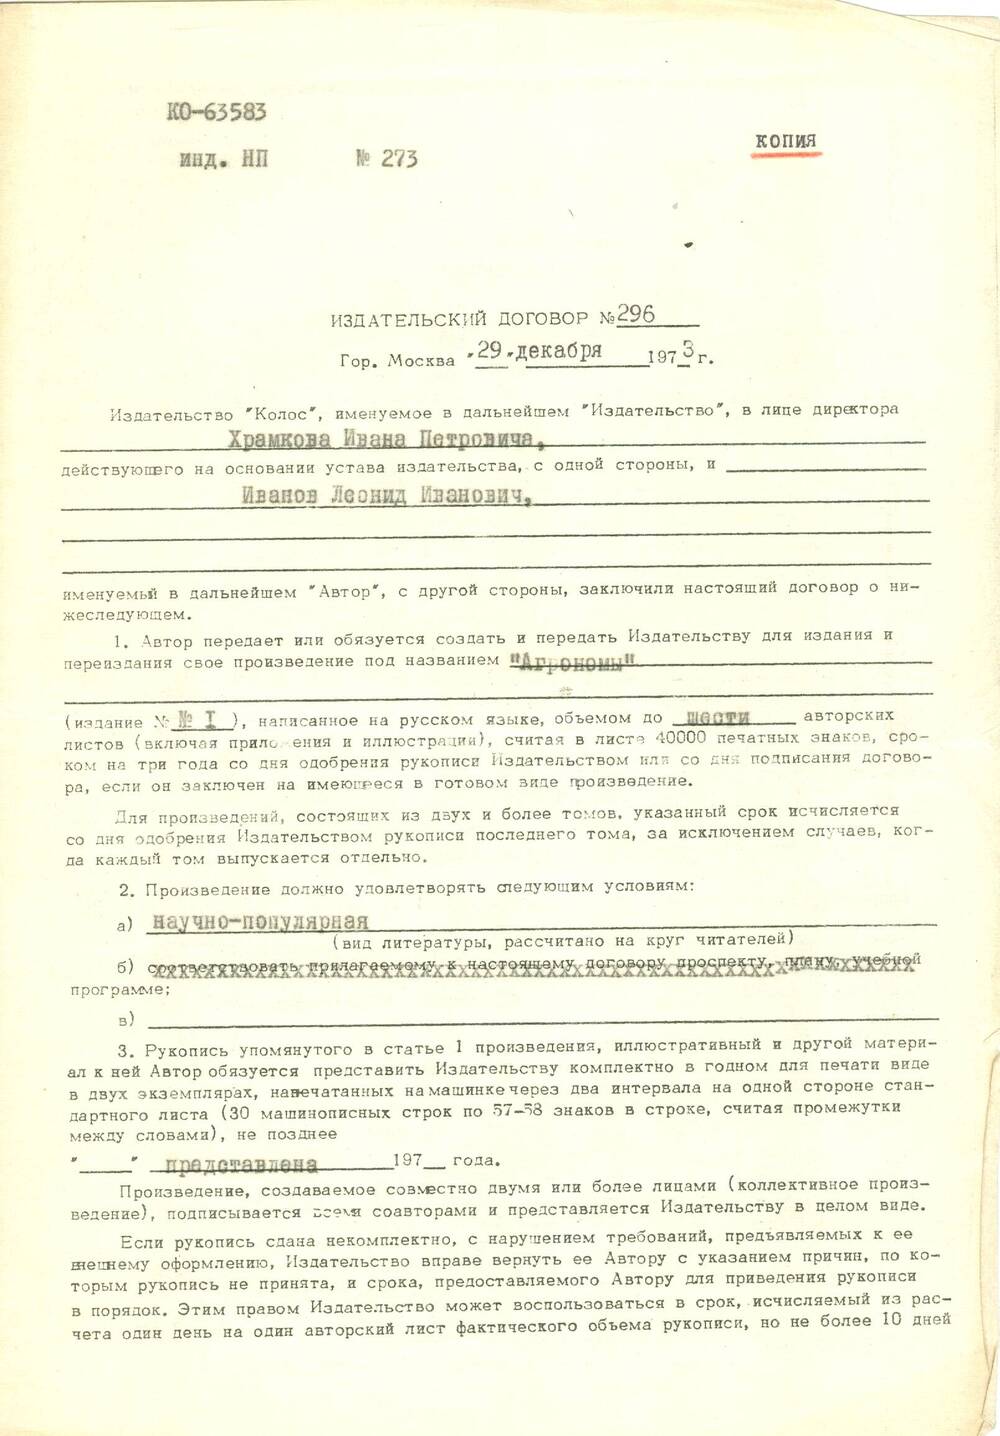 Договор издательский №296 между издательством Колос и Л. Ивановым